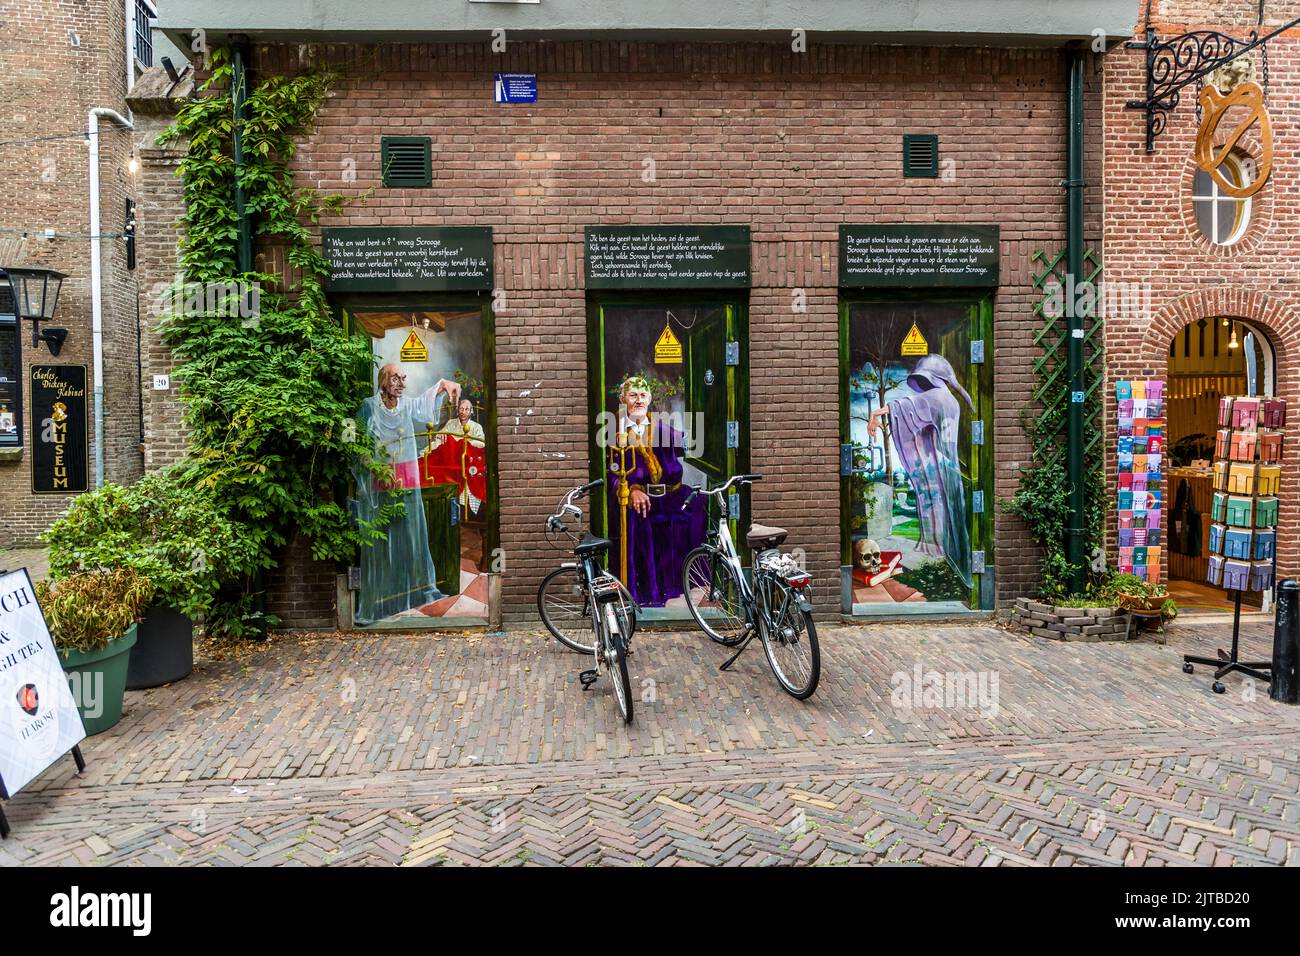 Una volta all'anno il Charles Dickens Festival si svolge nel distretto montano di Deventer, nei Paesi Bassi. I murales lo proclamano durante tutto l'anno Foto Stock